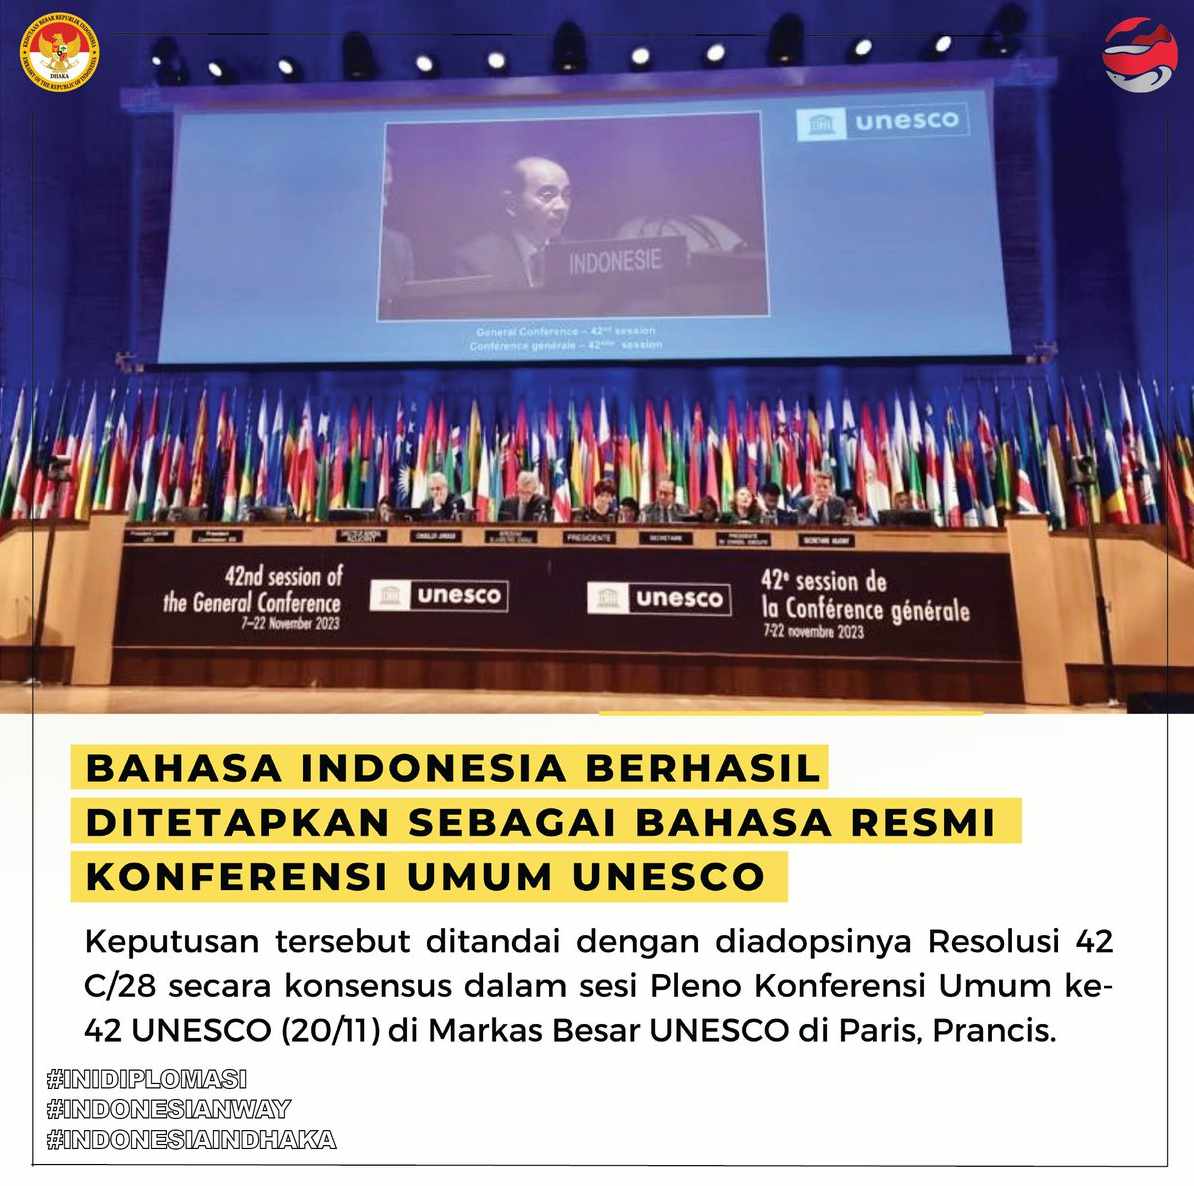 Bahasa Indonesia Ditetapkan sebagai Bahasa Resmi Konferensi Umum UNESCO